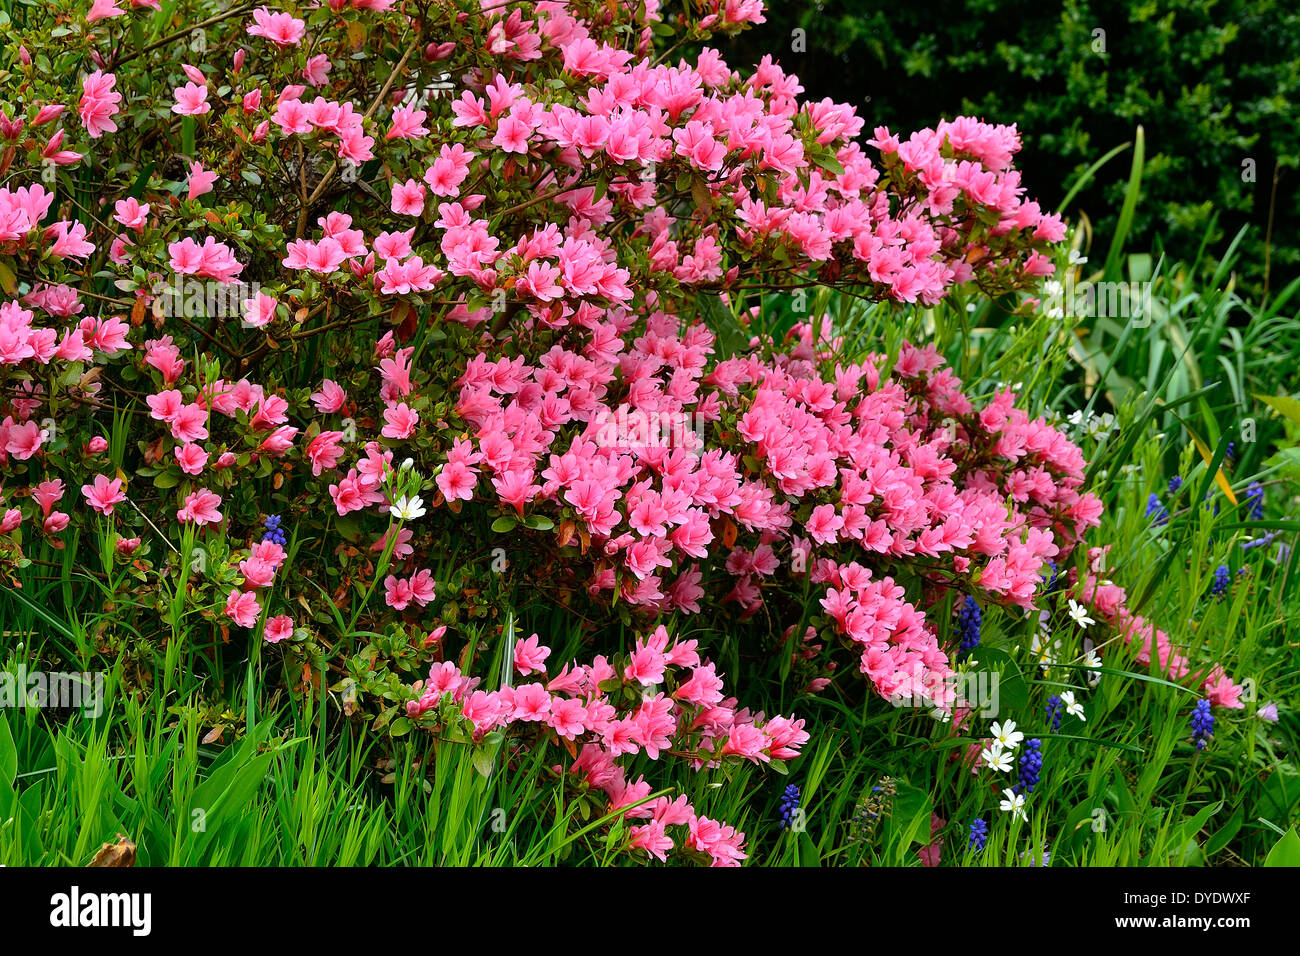 Azalea japonica in bloom in a garden. Stock Photo